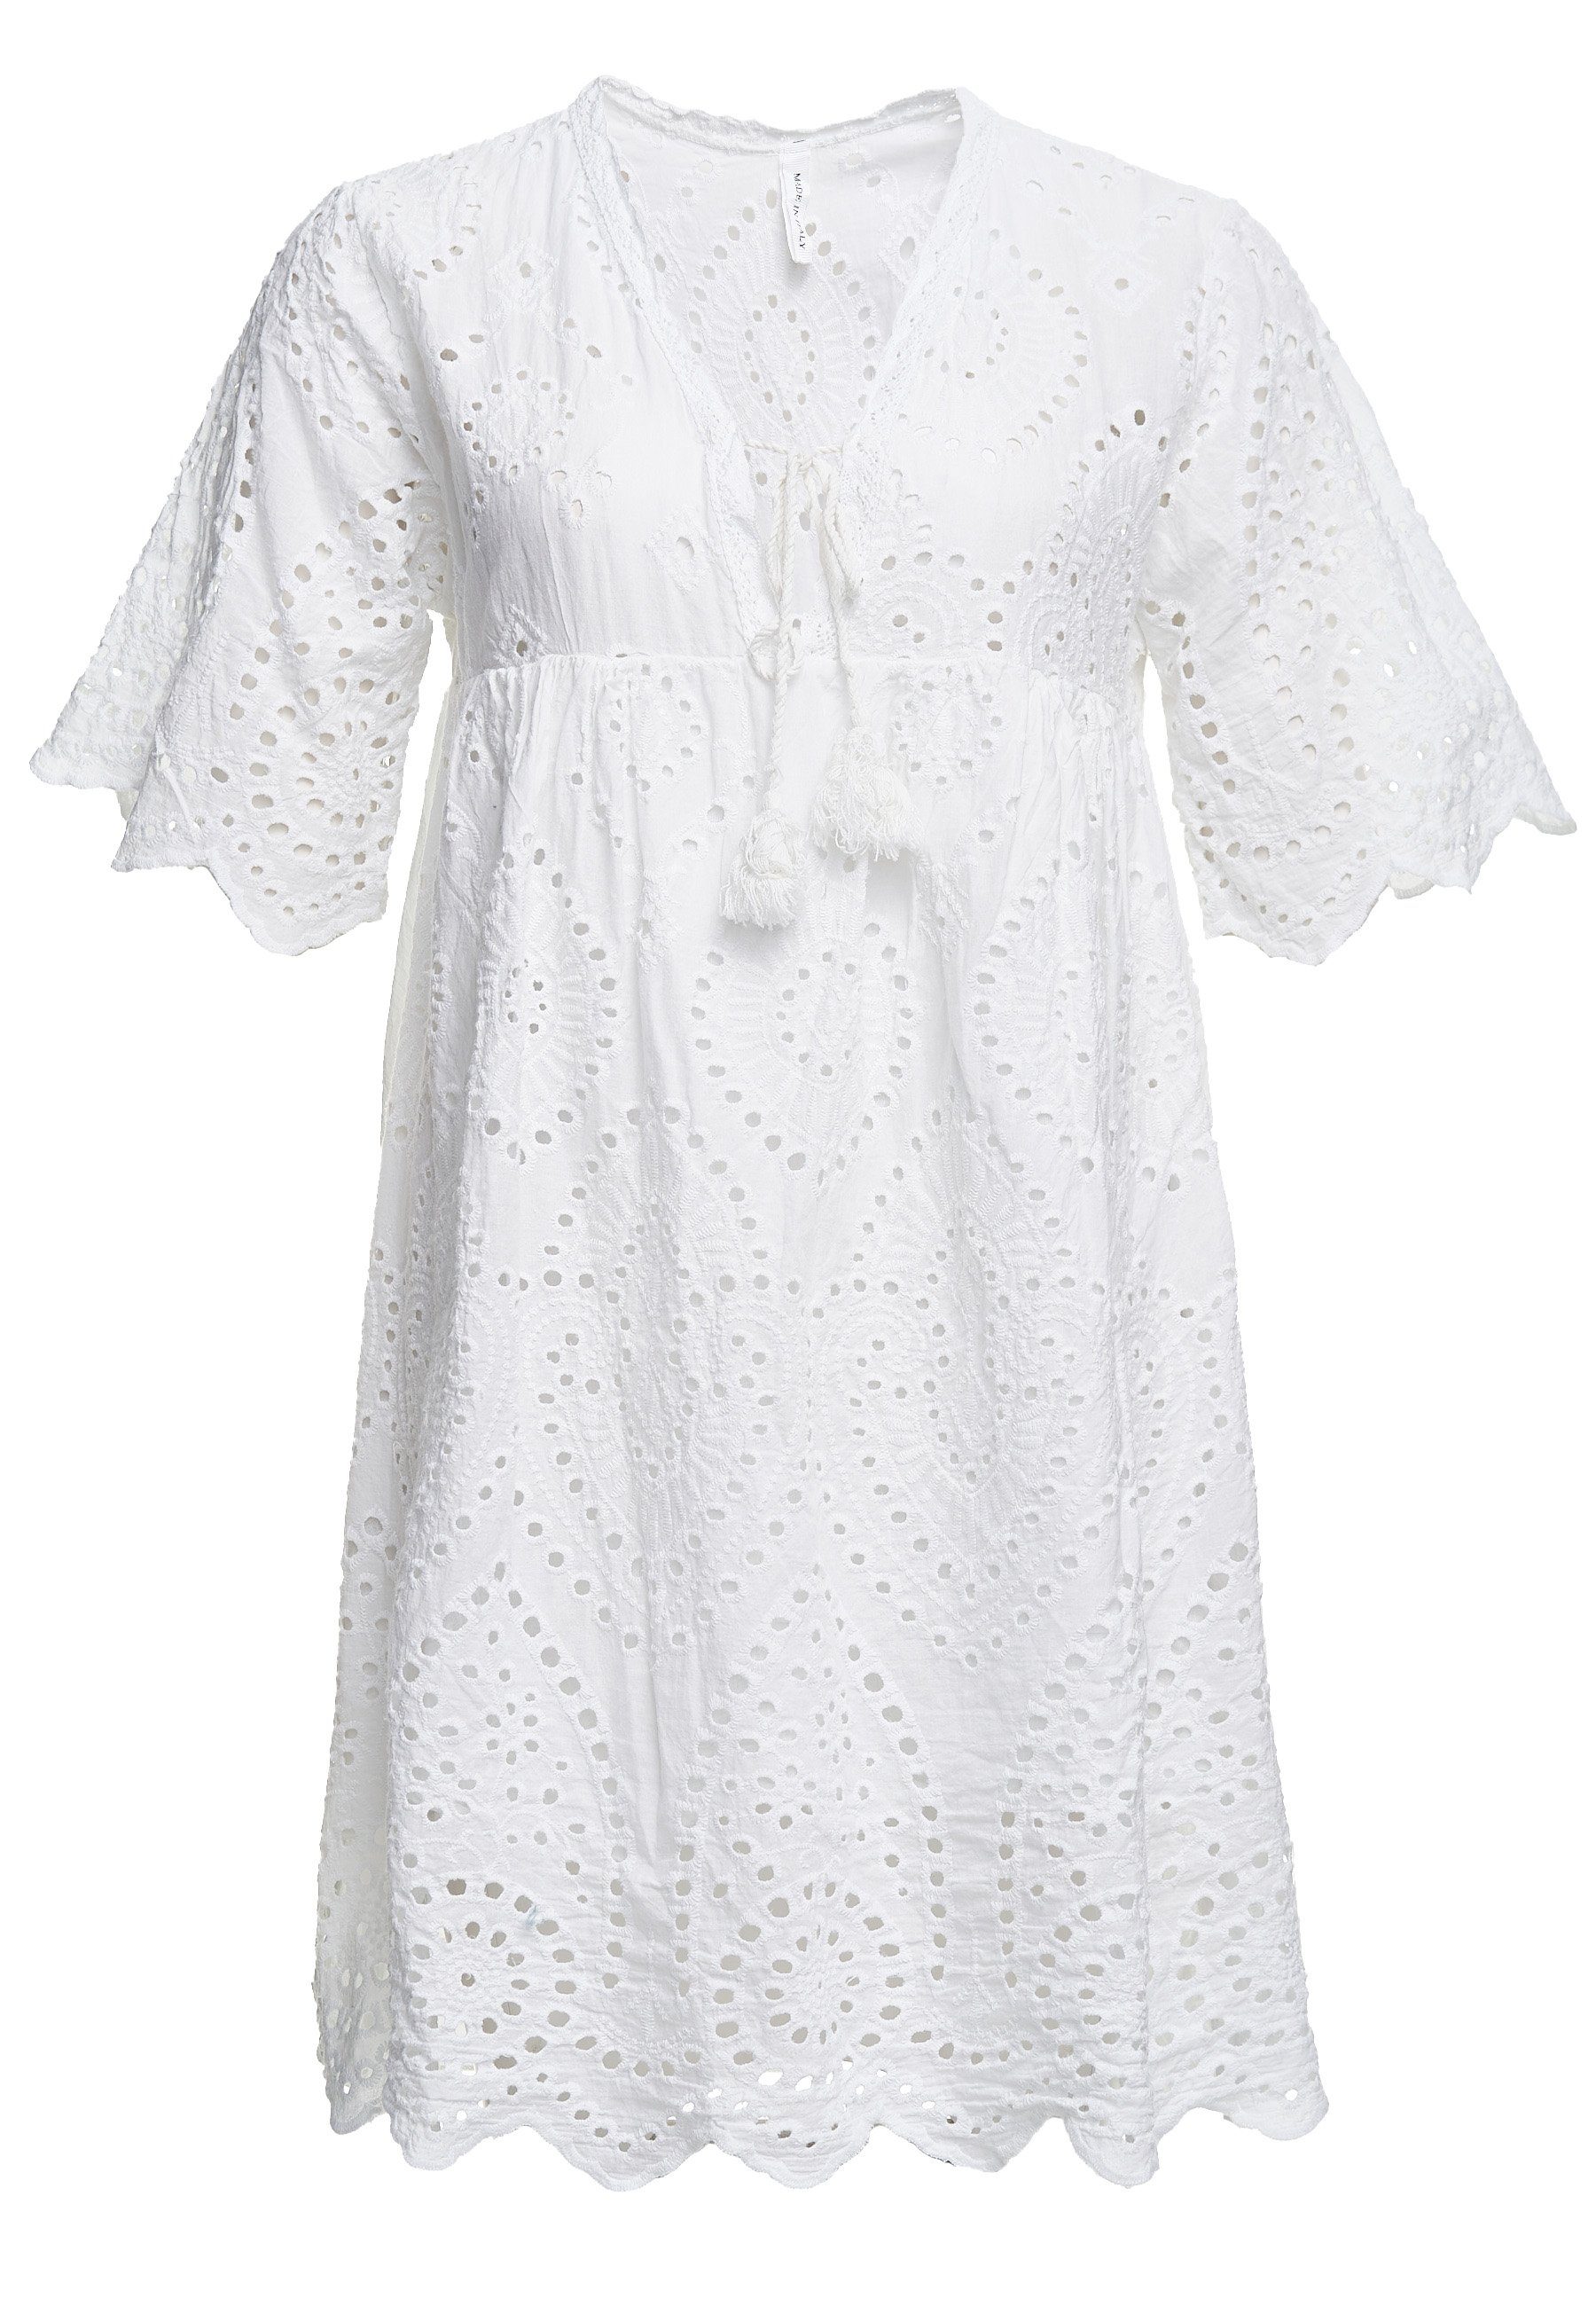 Decay Klassische weiß Design in tollem Bluse